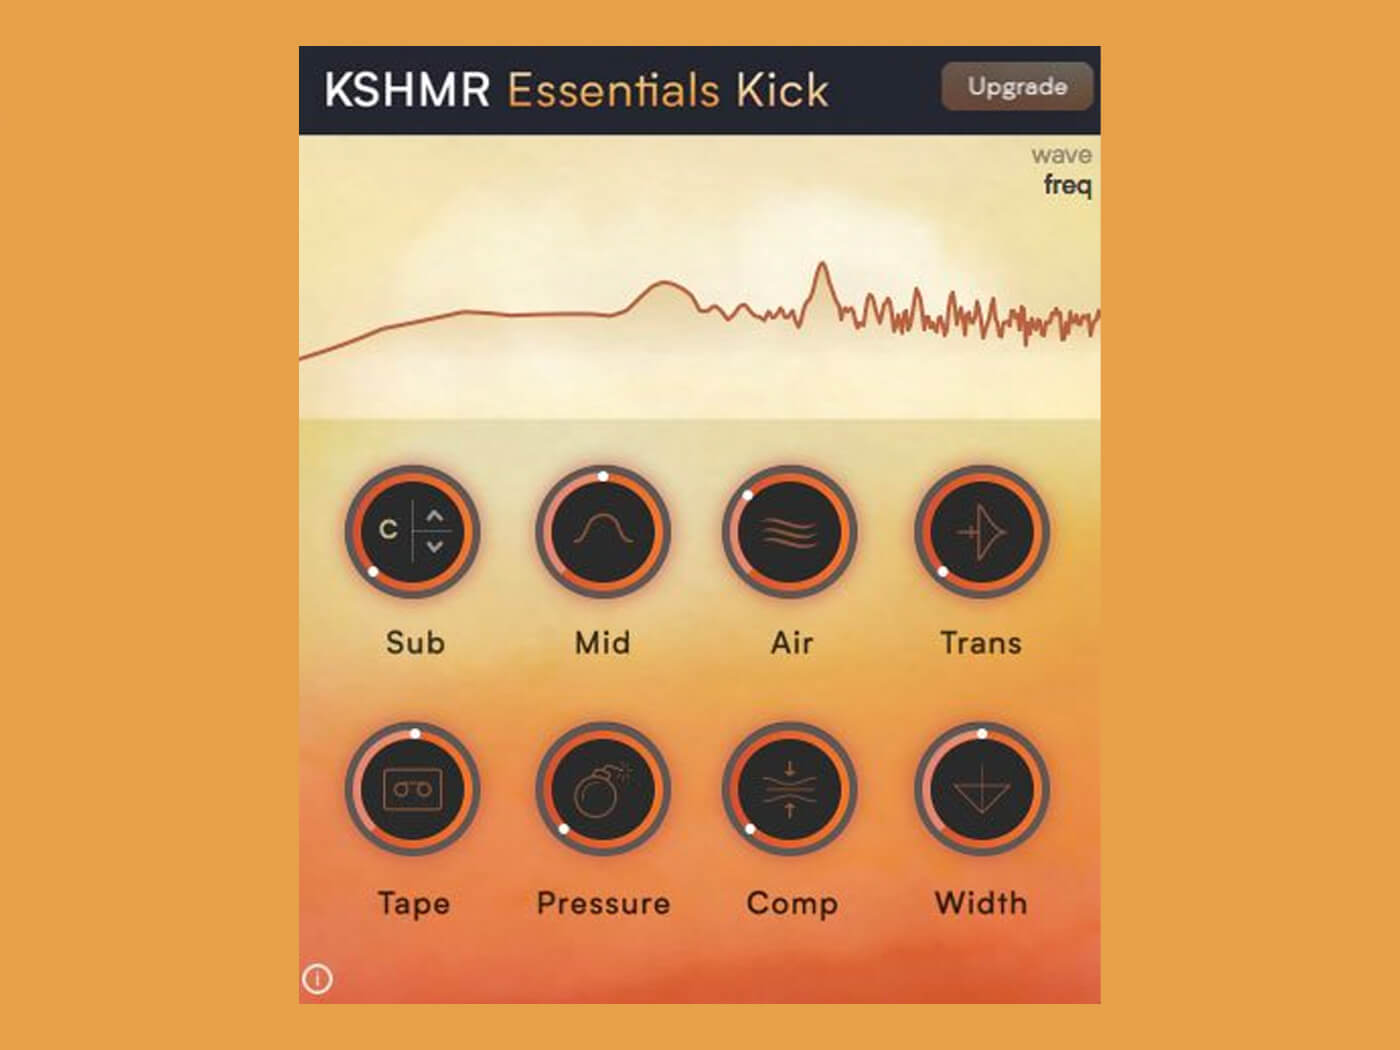 KSHMR Essentials Kick